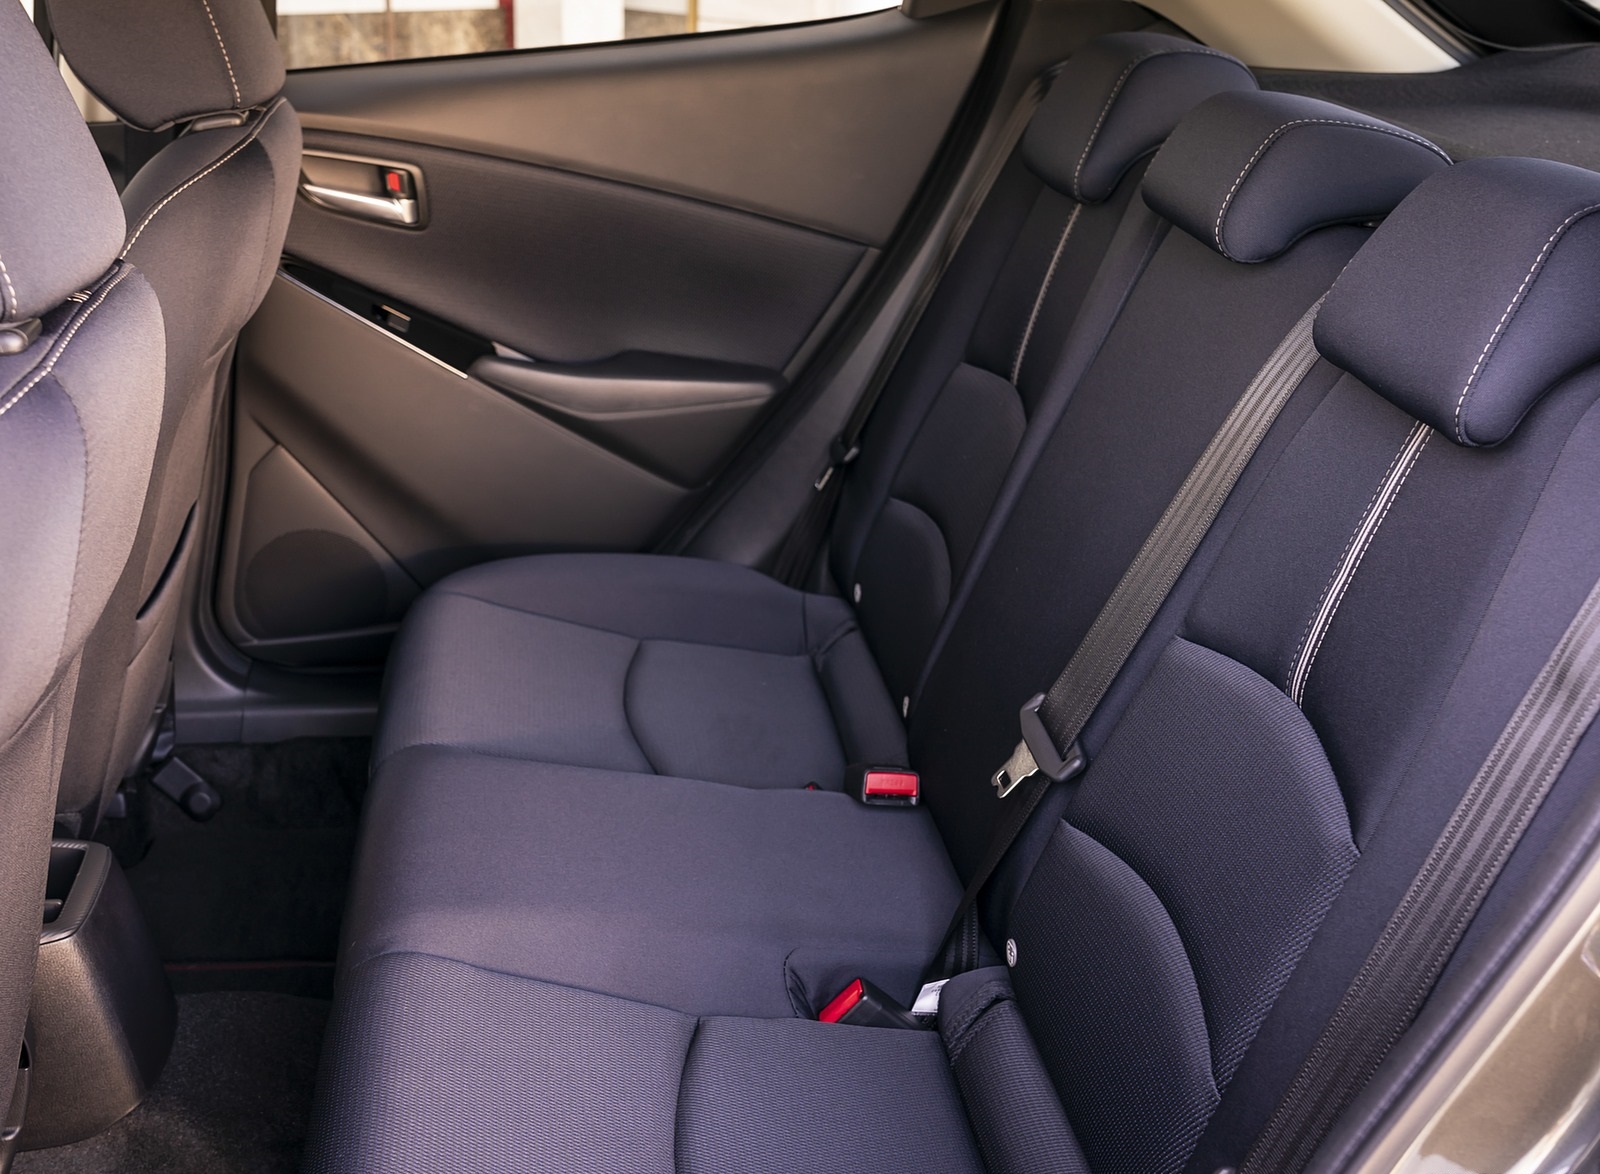 2020 Mazda2 (Color: Machine Grey) Interior Rear Seats Wallpapers #178 of 180